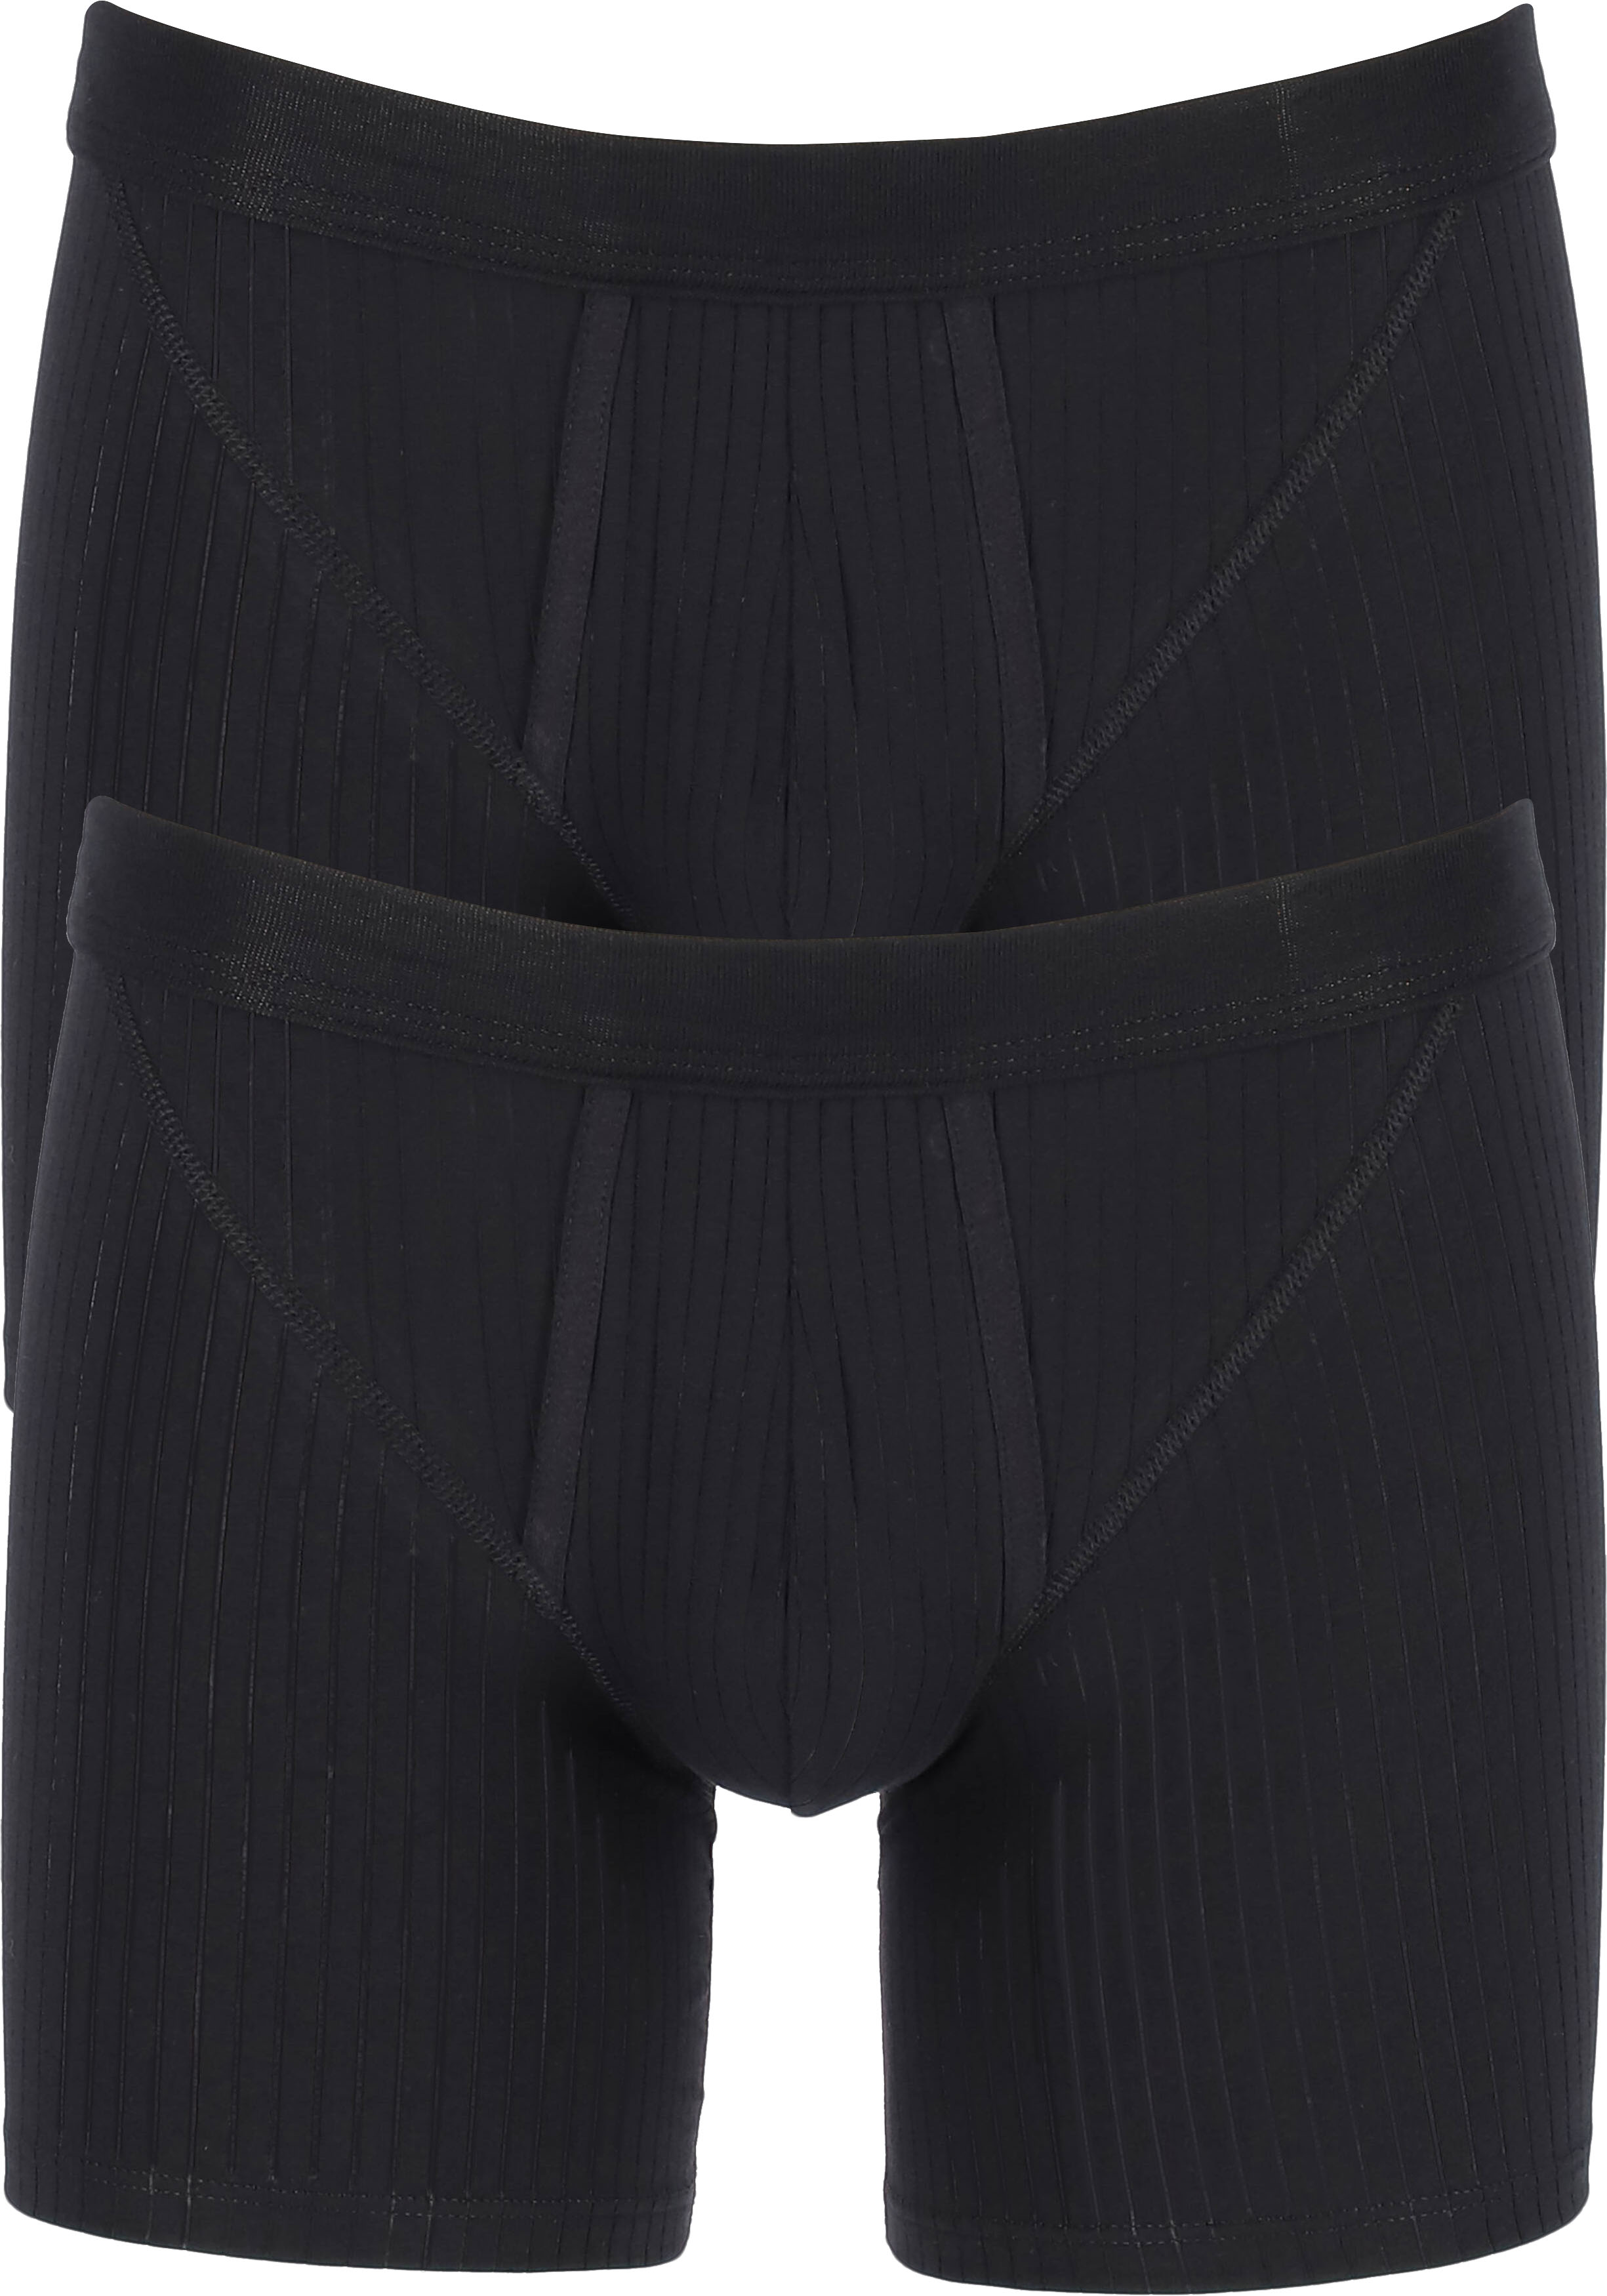 SCHIESSER Authentic shorts (2-pack), met gulp, zwart